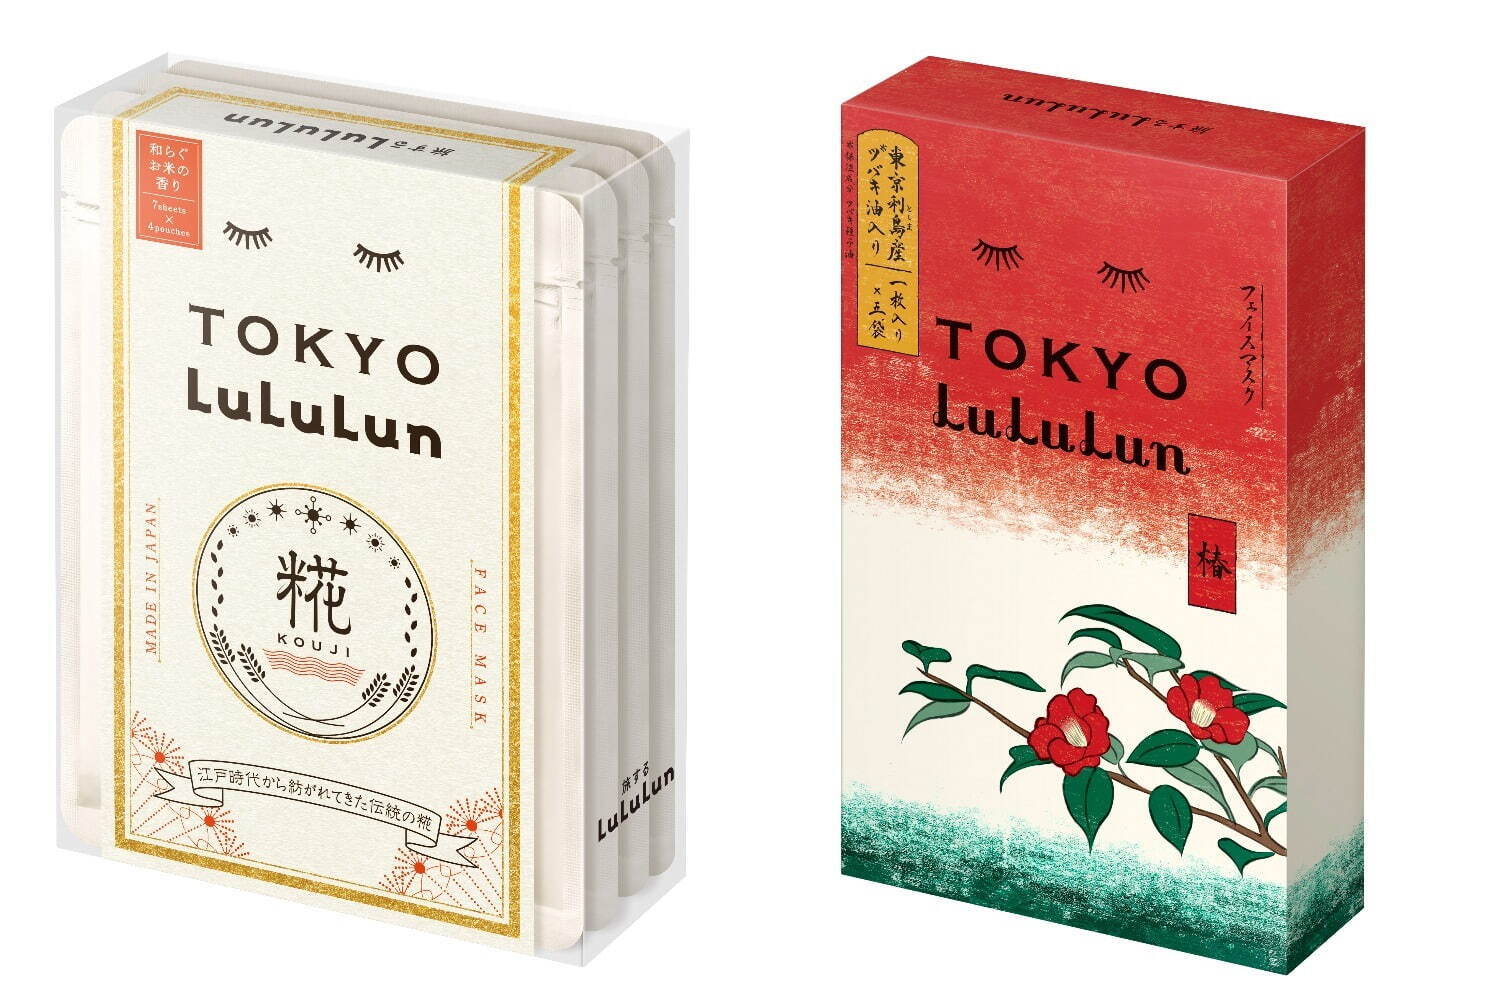 左から)東京ルルルン(和らぐお米の香り)1,760円
東京ルルルン(粋な椿のマスク)1,650円